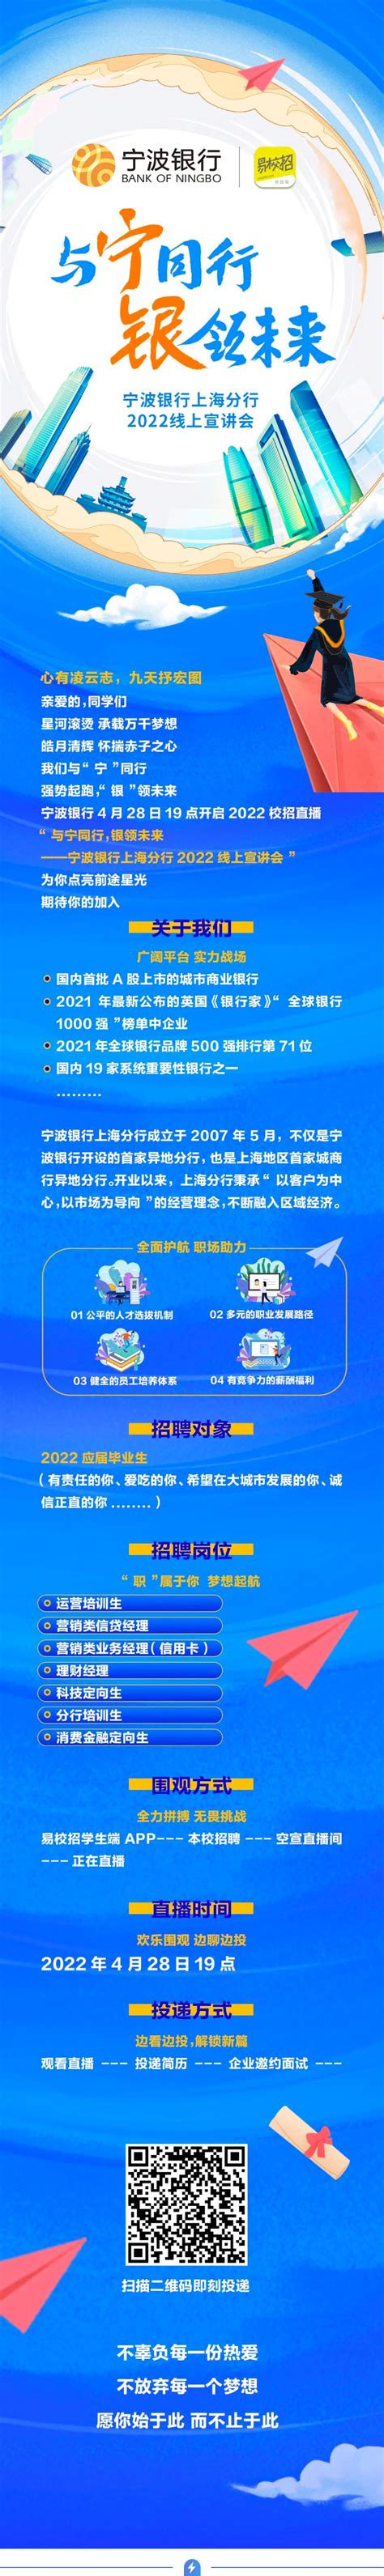 【线上宣讲会】宁波银行上海分行2022线上宣讲会-文章详情